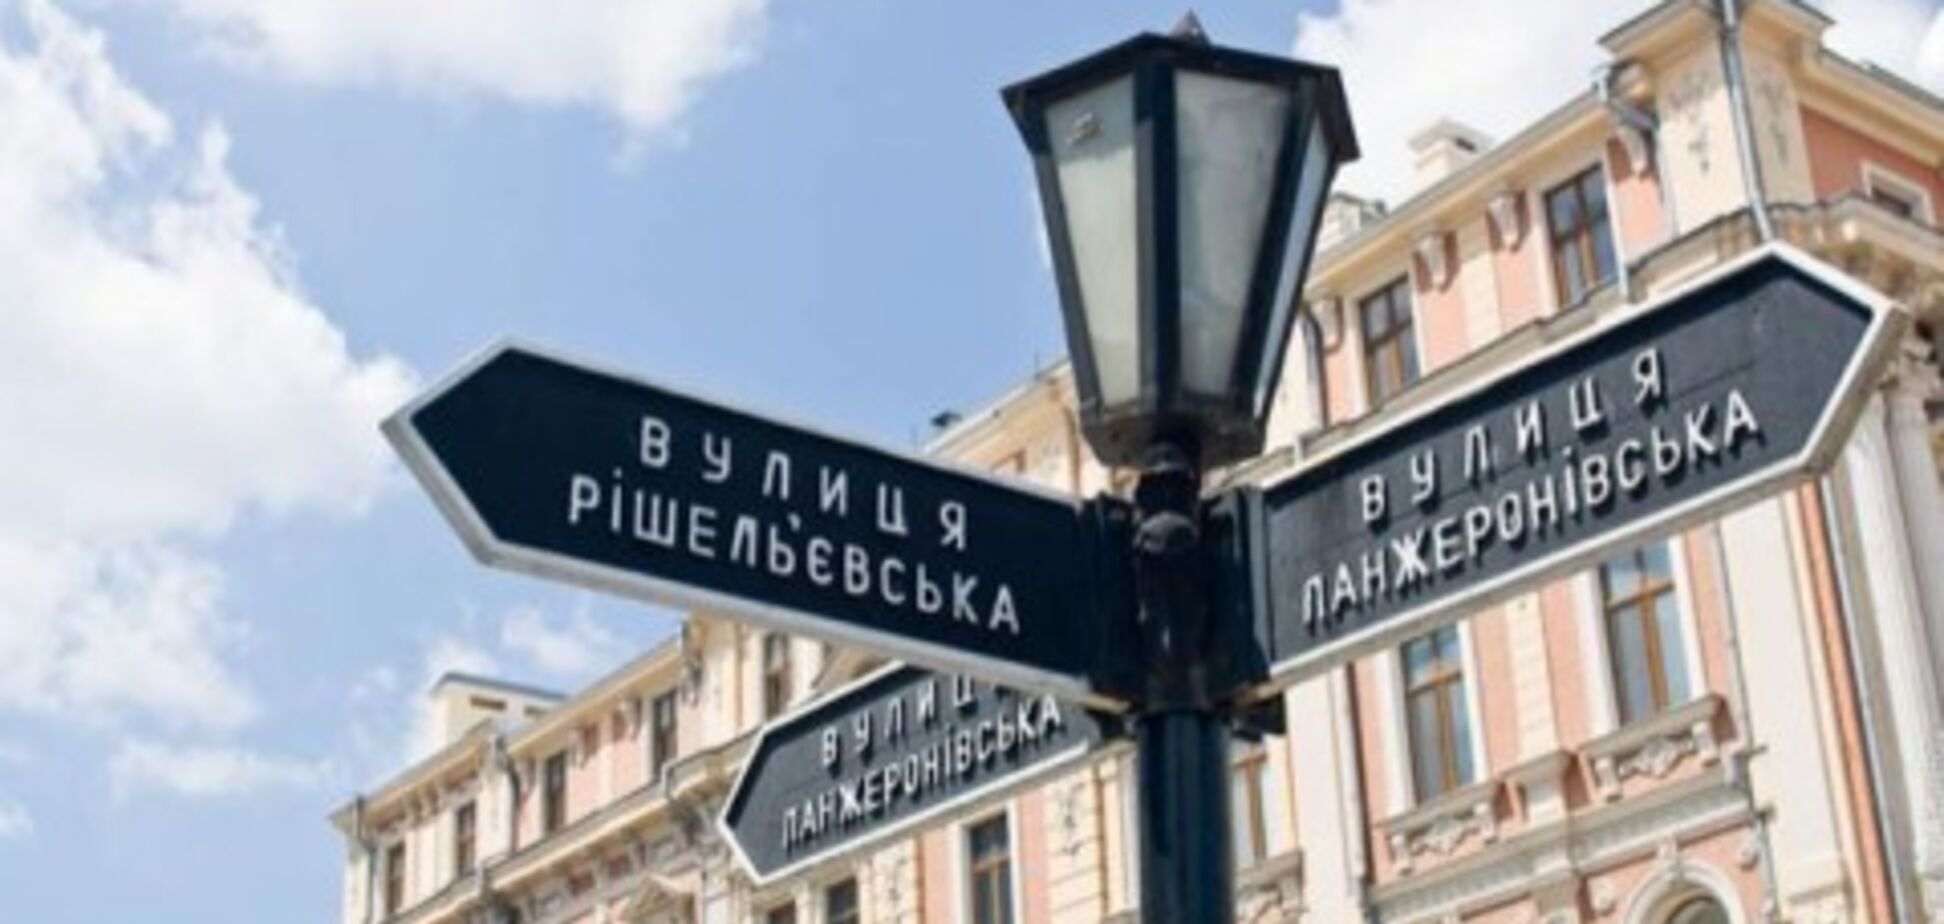 Переименование улиц в Одессе